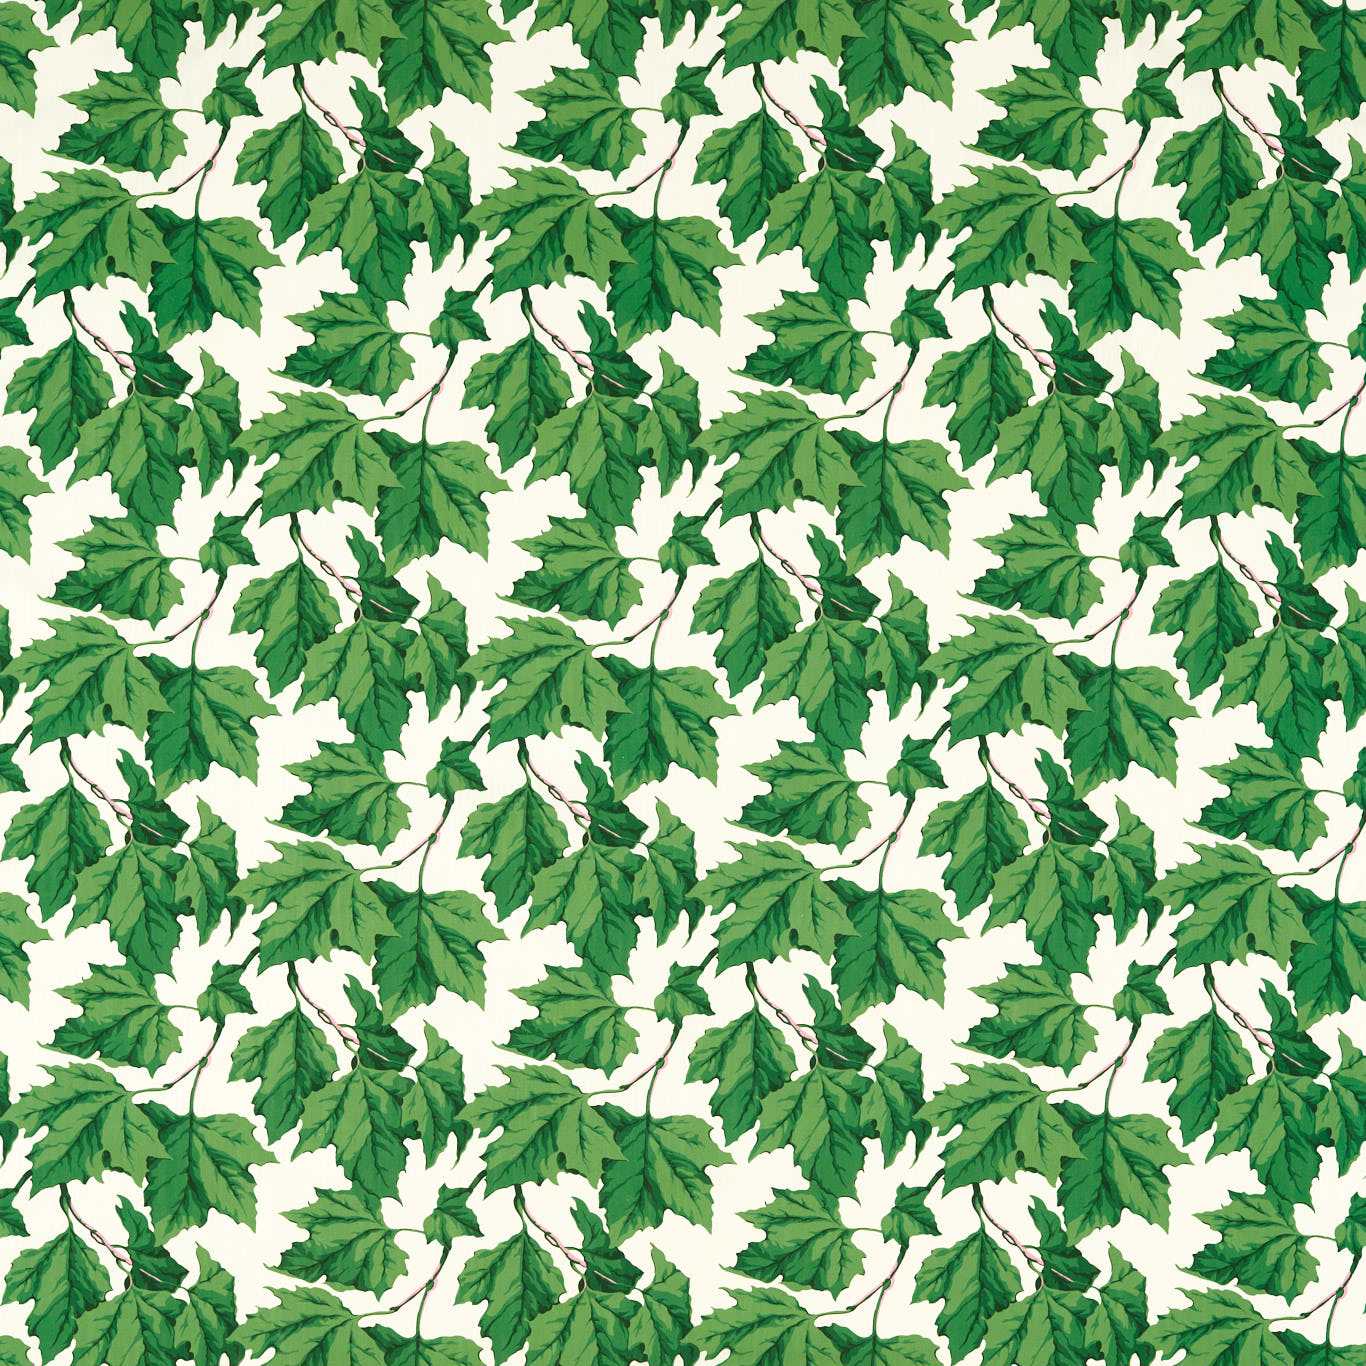 Dappled Leaf Emerald Fabric by HAR